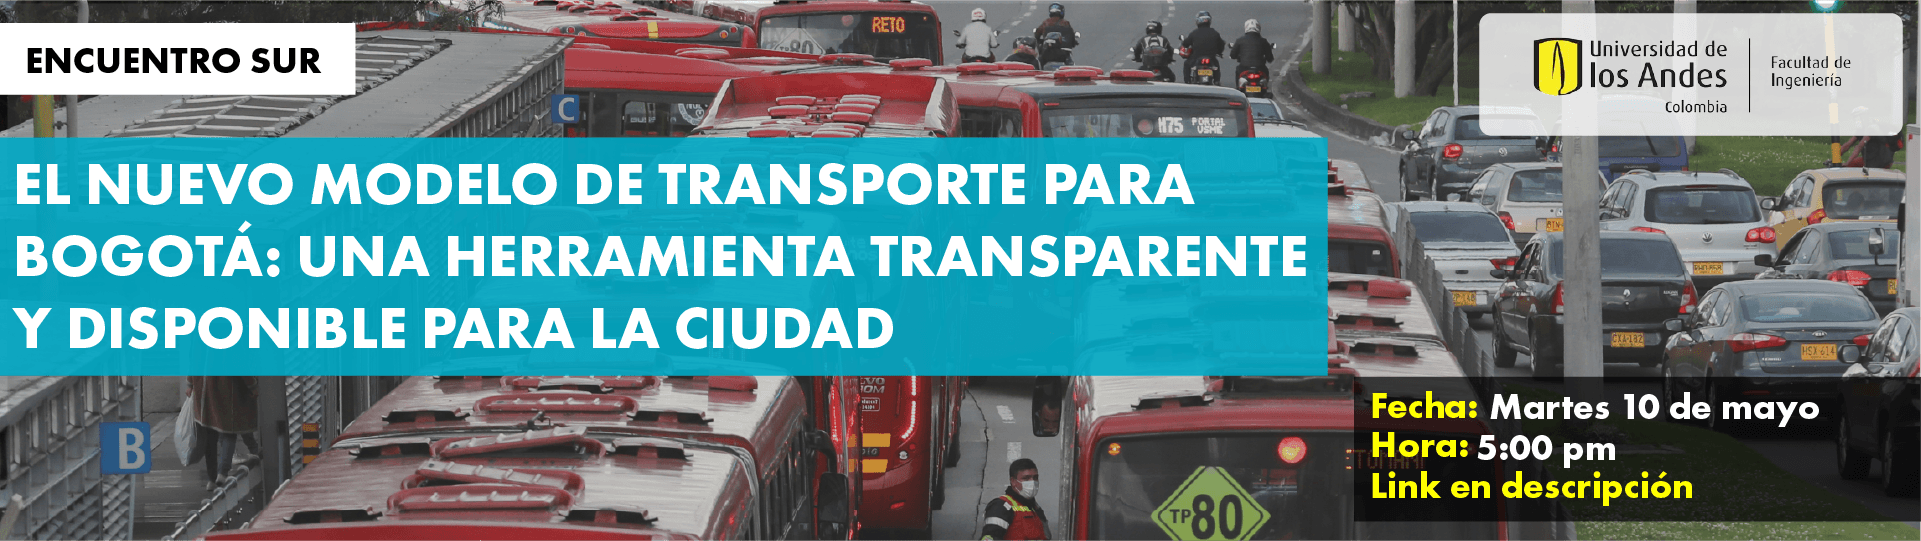 Encuentro SUR: El nuevo modelo de transporte de Bogotá: Una herramienta transparente y disponible para Bogotá